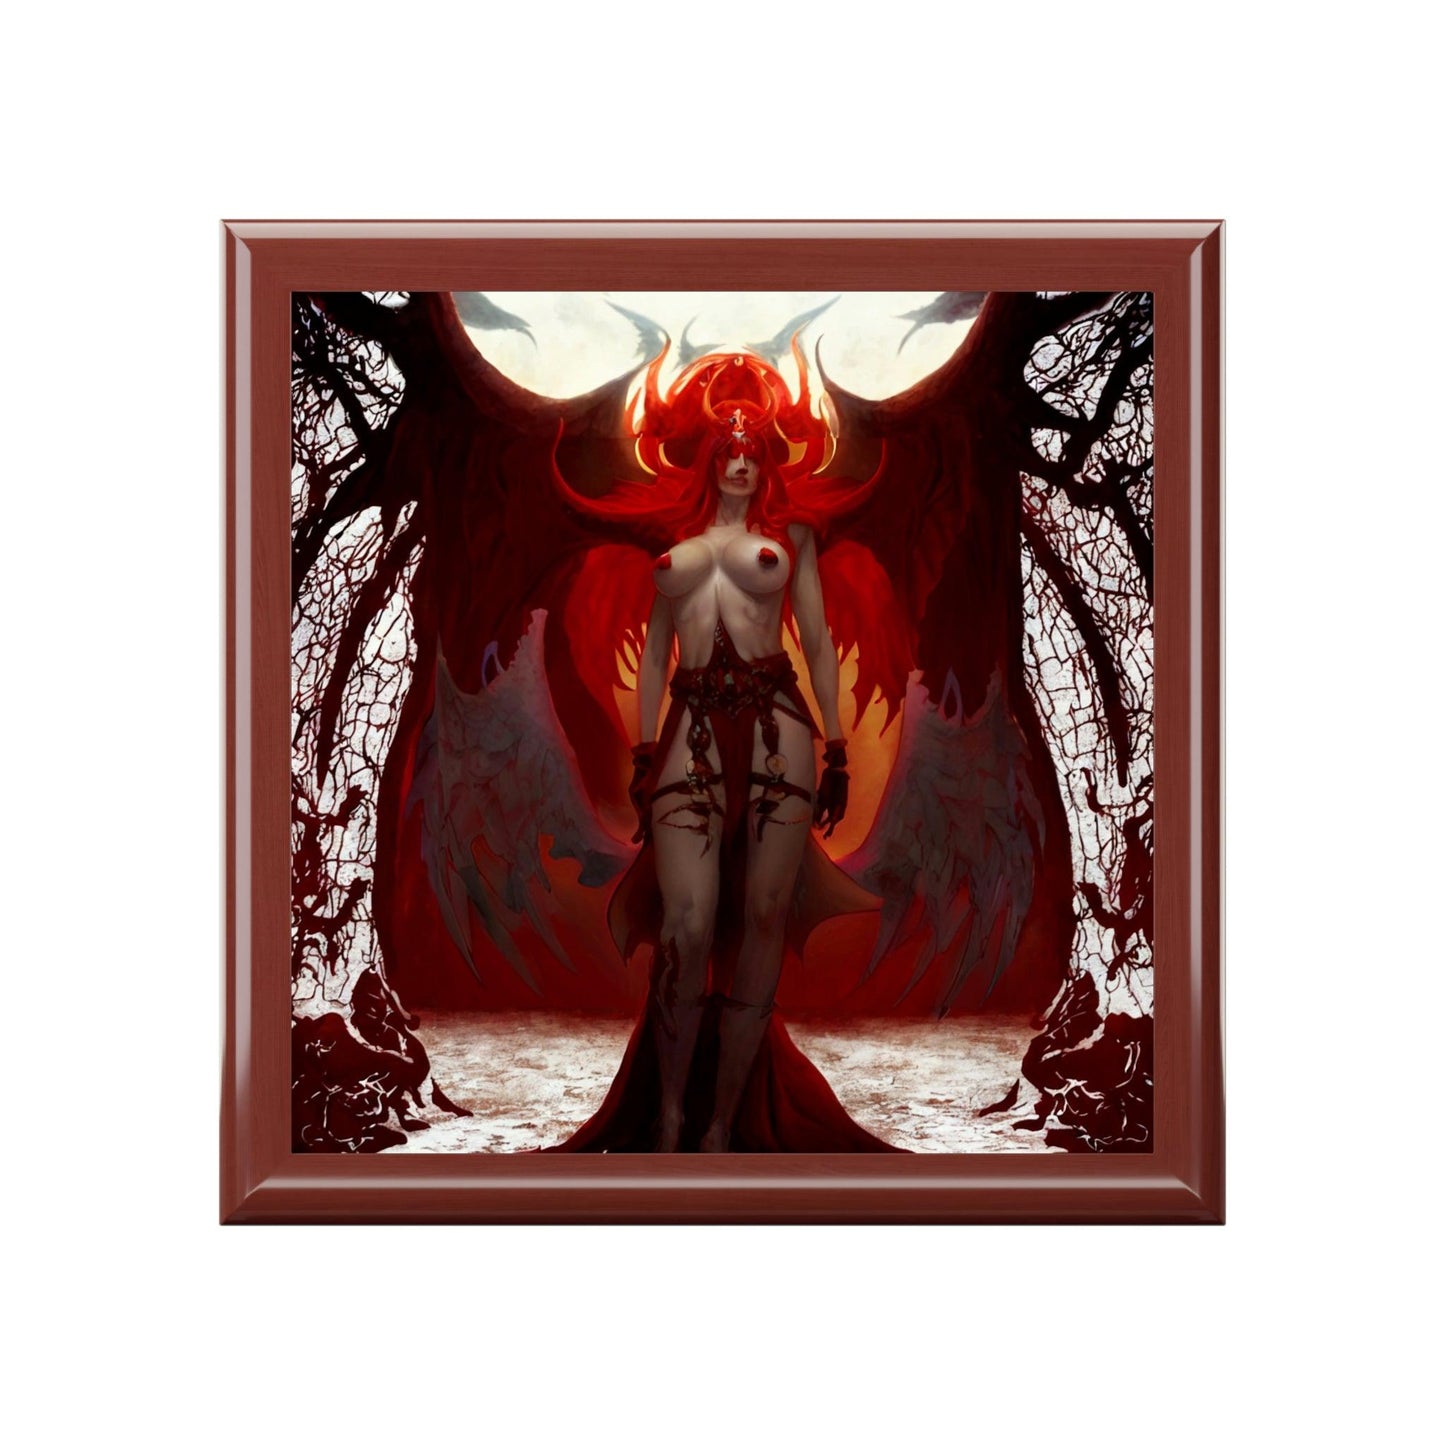 Lilith-Jewelry-Box-የእርስዎን-ታሊስማን-እና-ቀለበቶችን ለማከማቸት-7